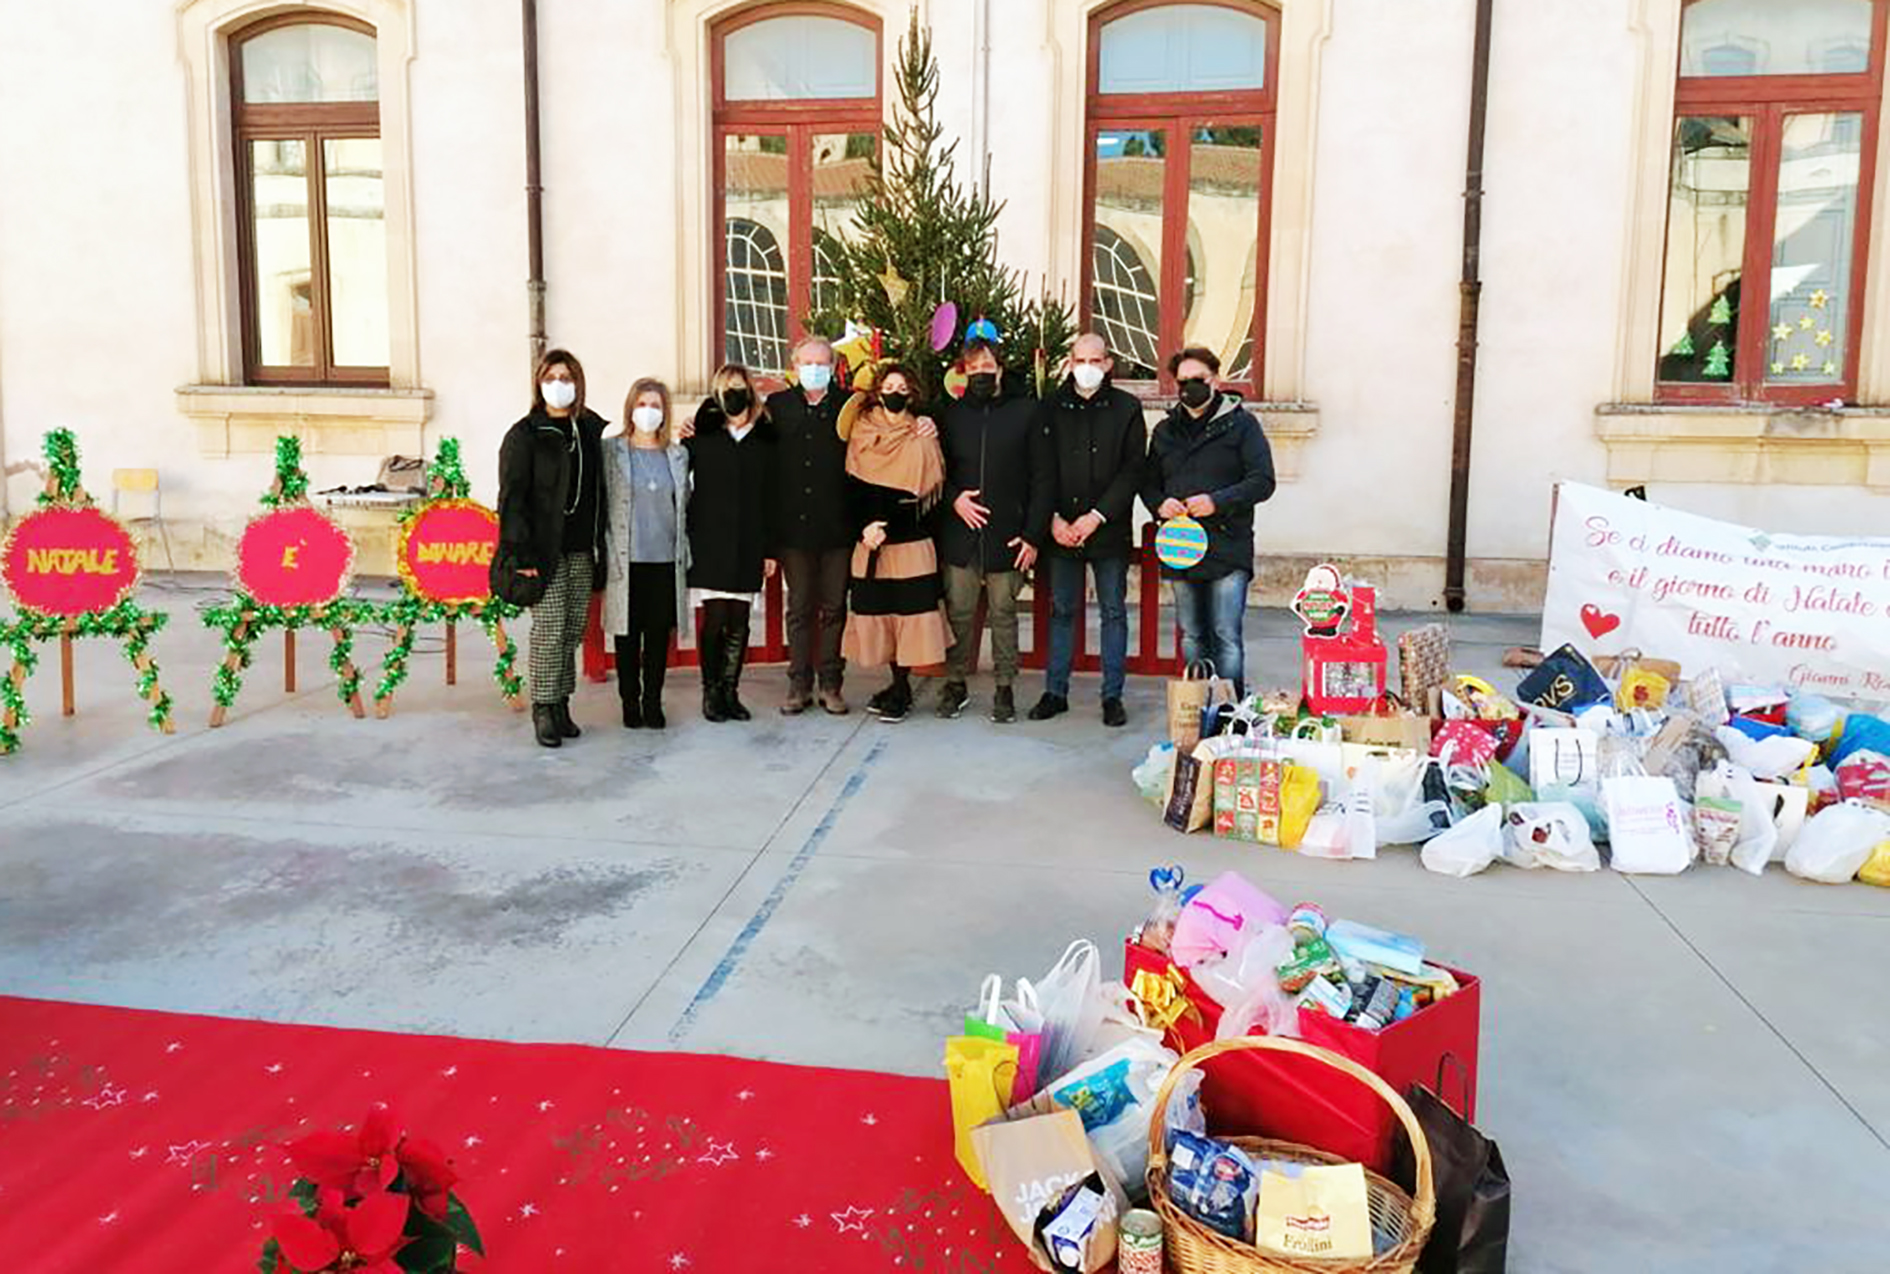 “A Natale è bello donare”, gli alunni della De Cillis donano alimenti e giocattoli all’Unicef, parrocchie e Misericordia